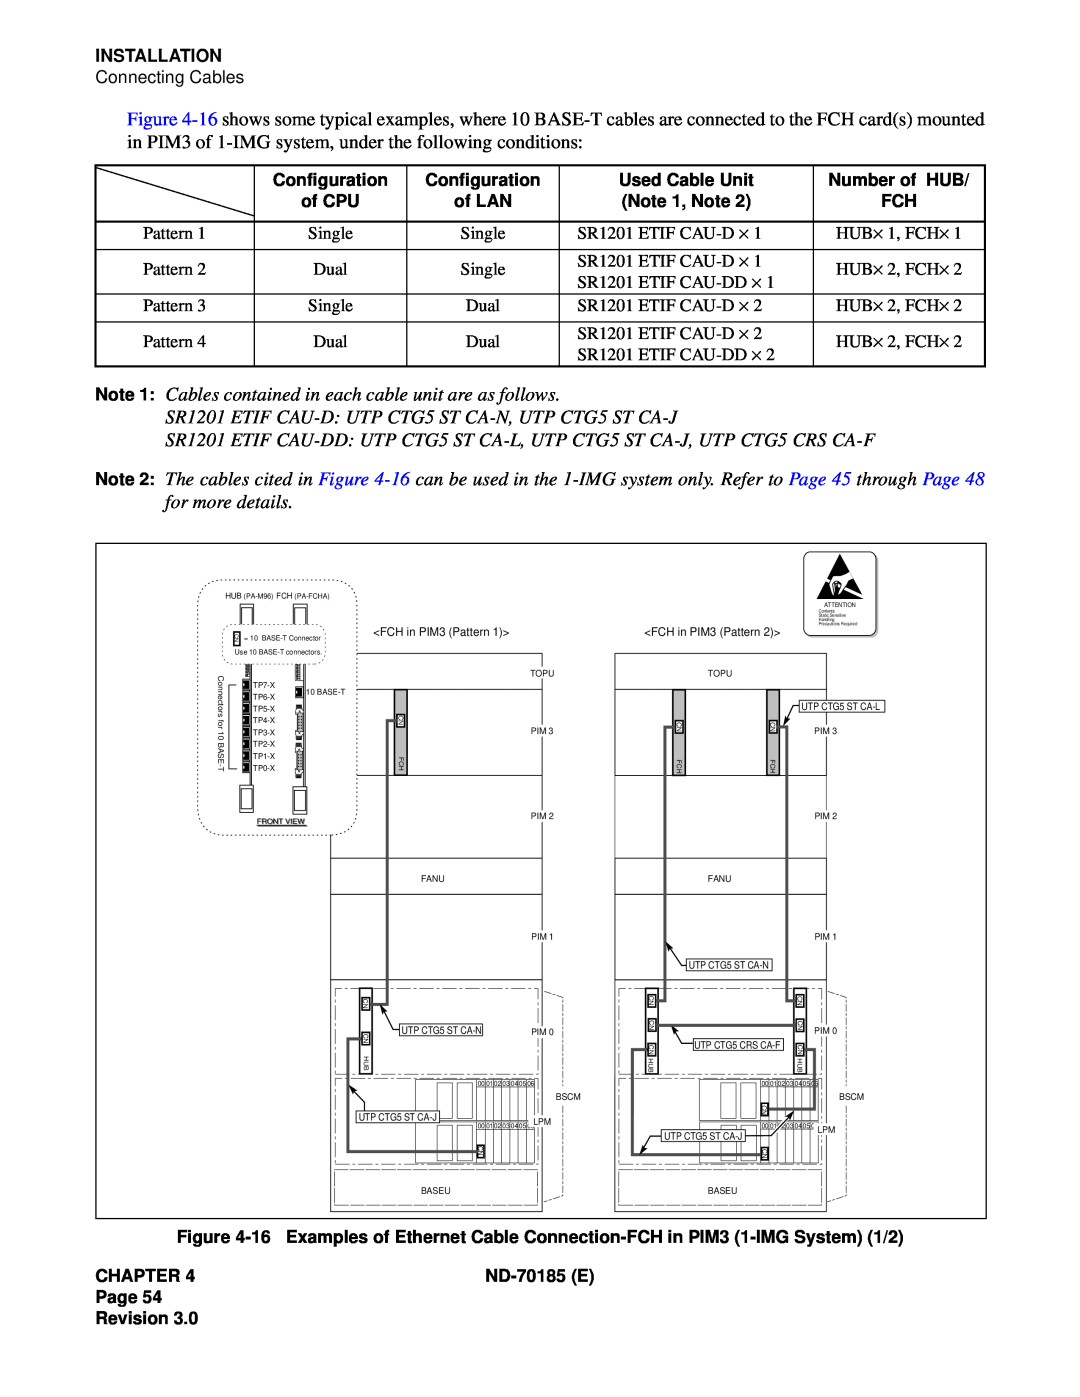 NEC NEAX2400 system manual Pattern 